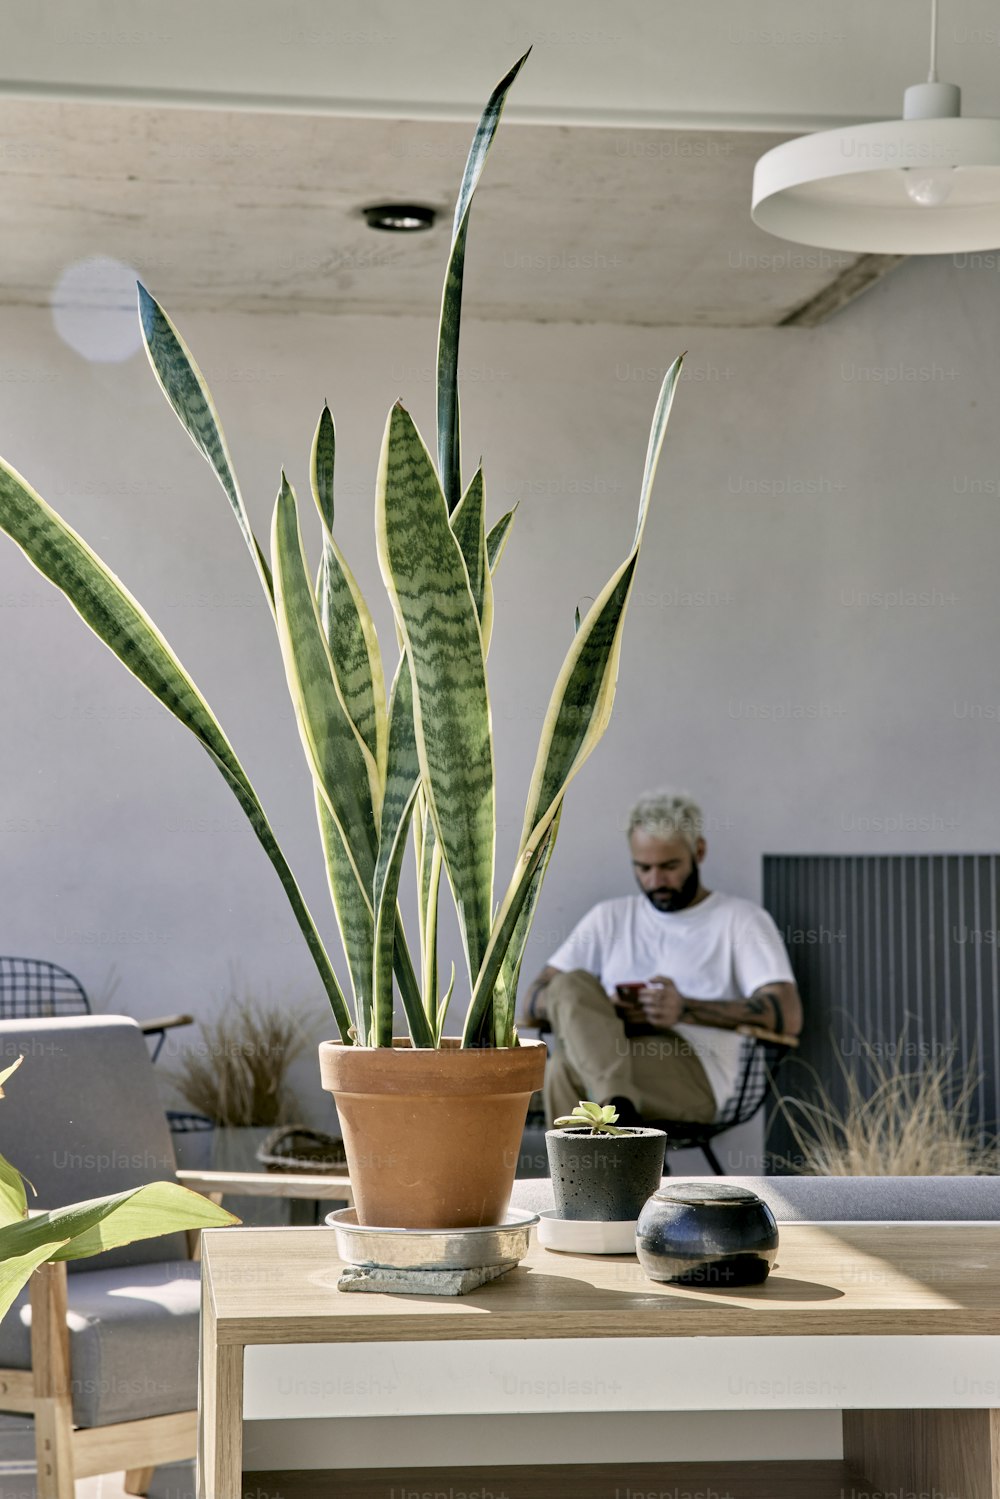 Un uomo seduto su una sedia accanto a una pianta in vaso